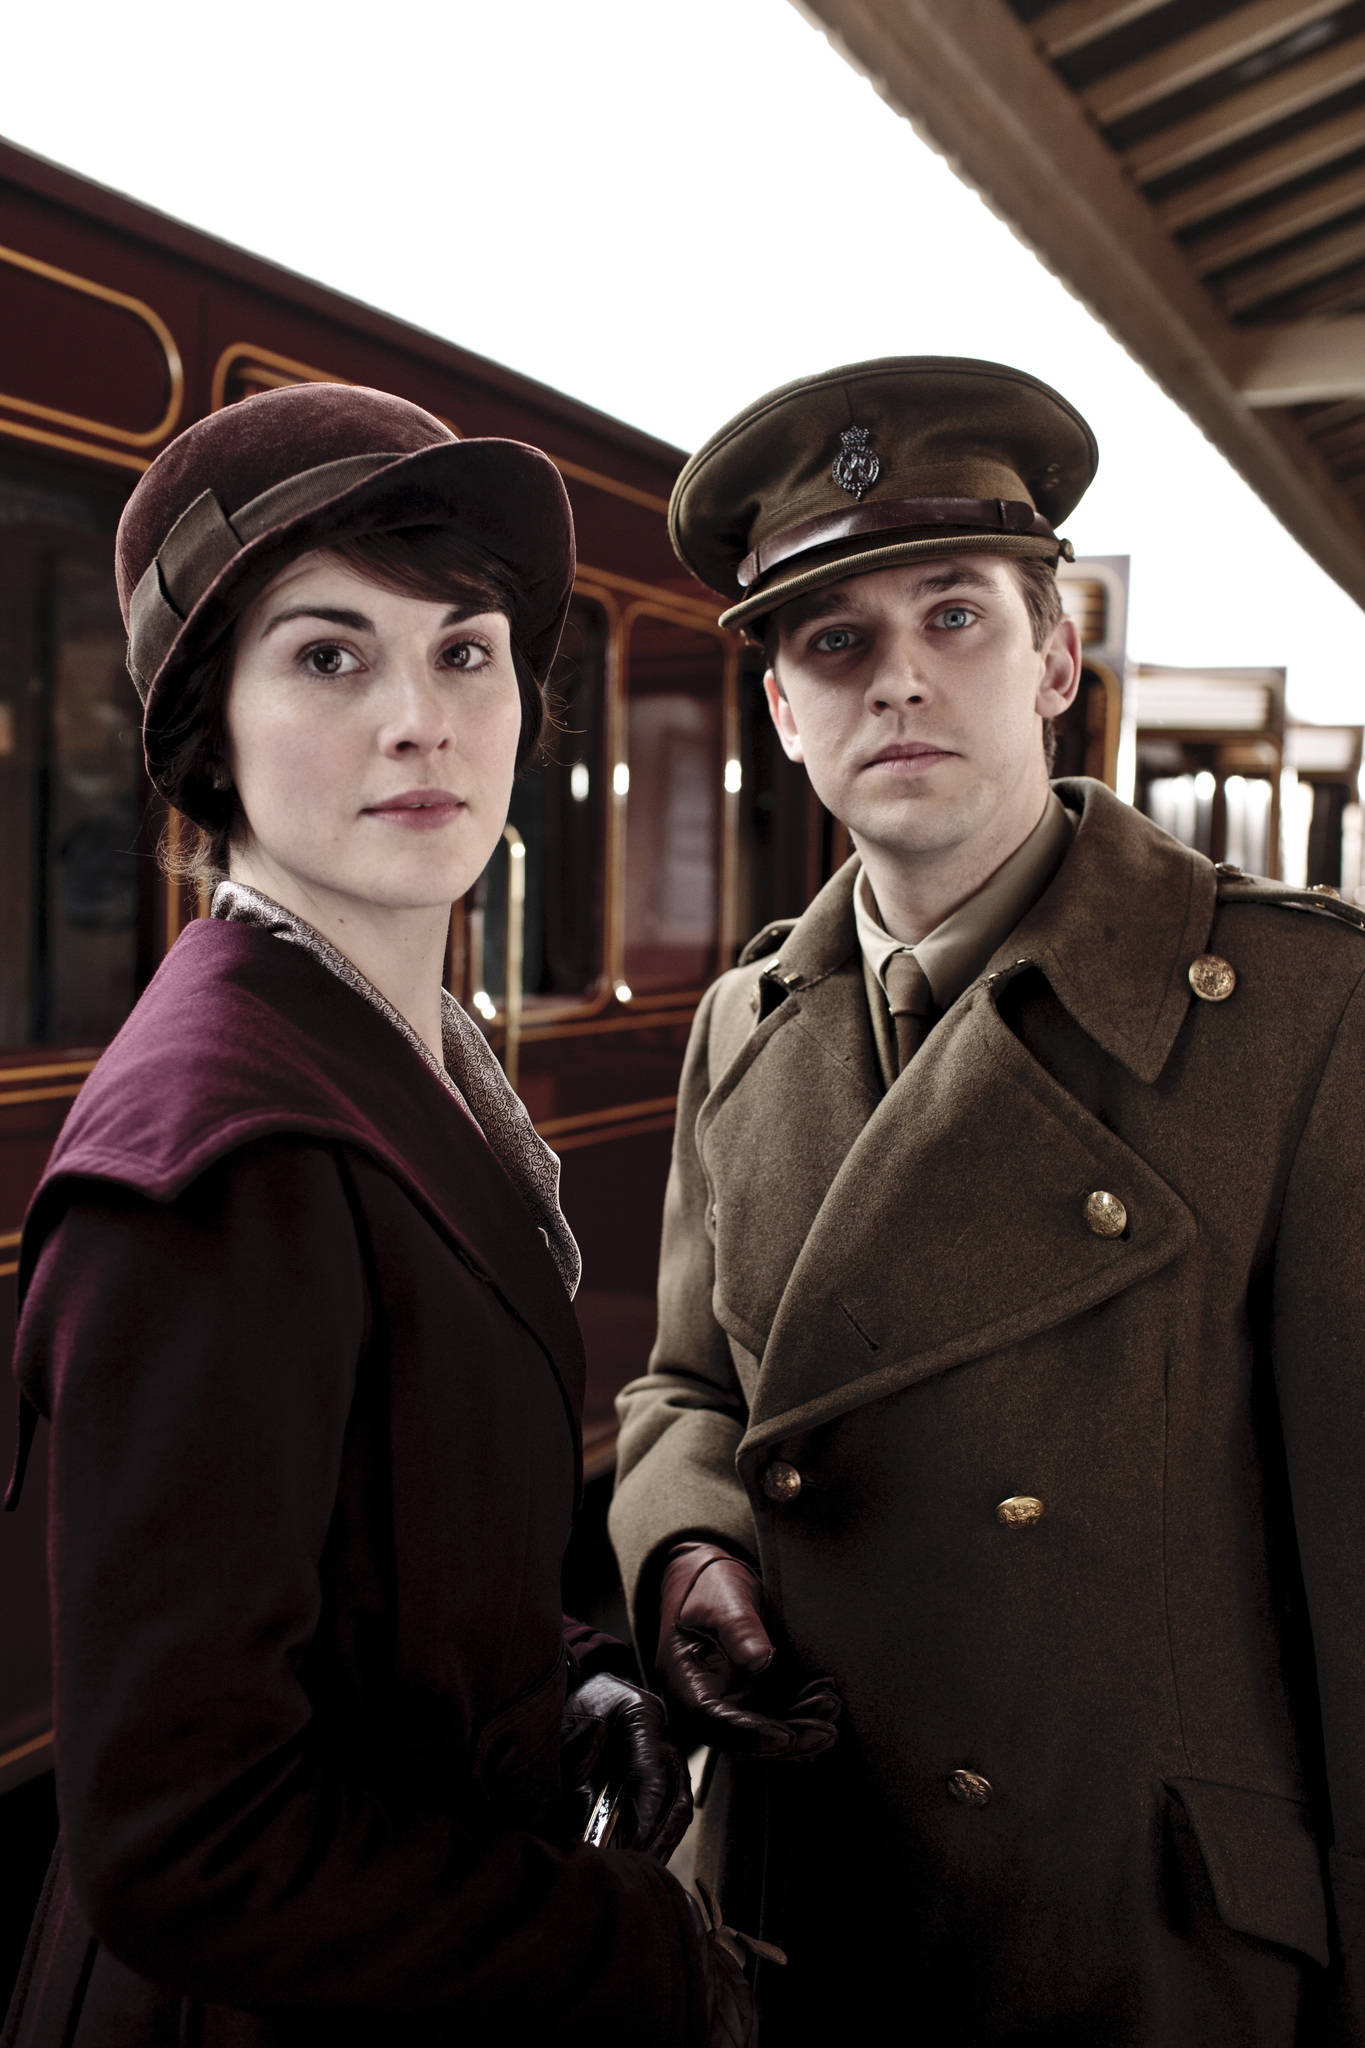 Still of Dan Stevens and Michelle Dockery in Downton Abbey (2010)